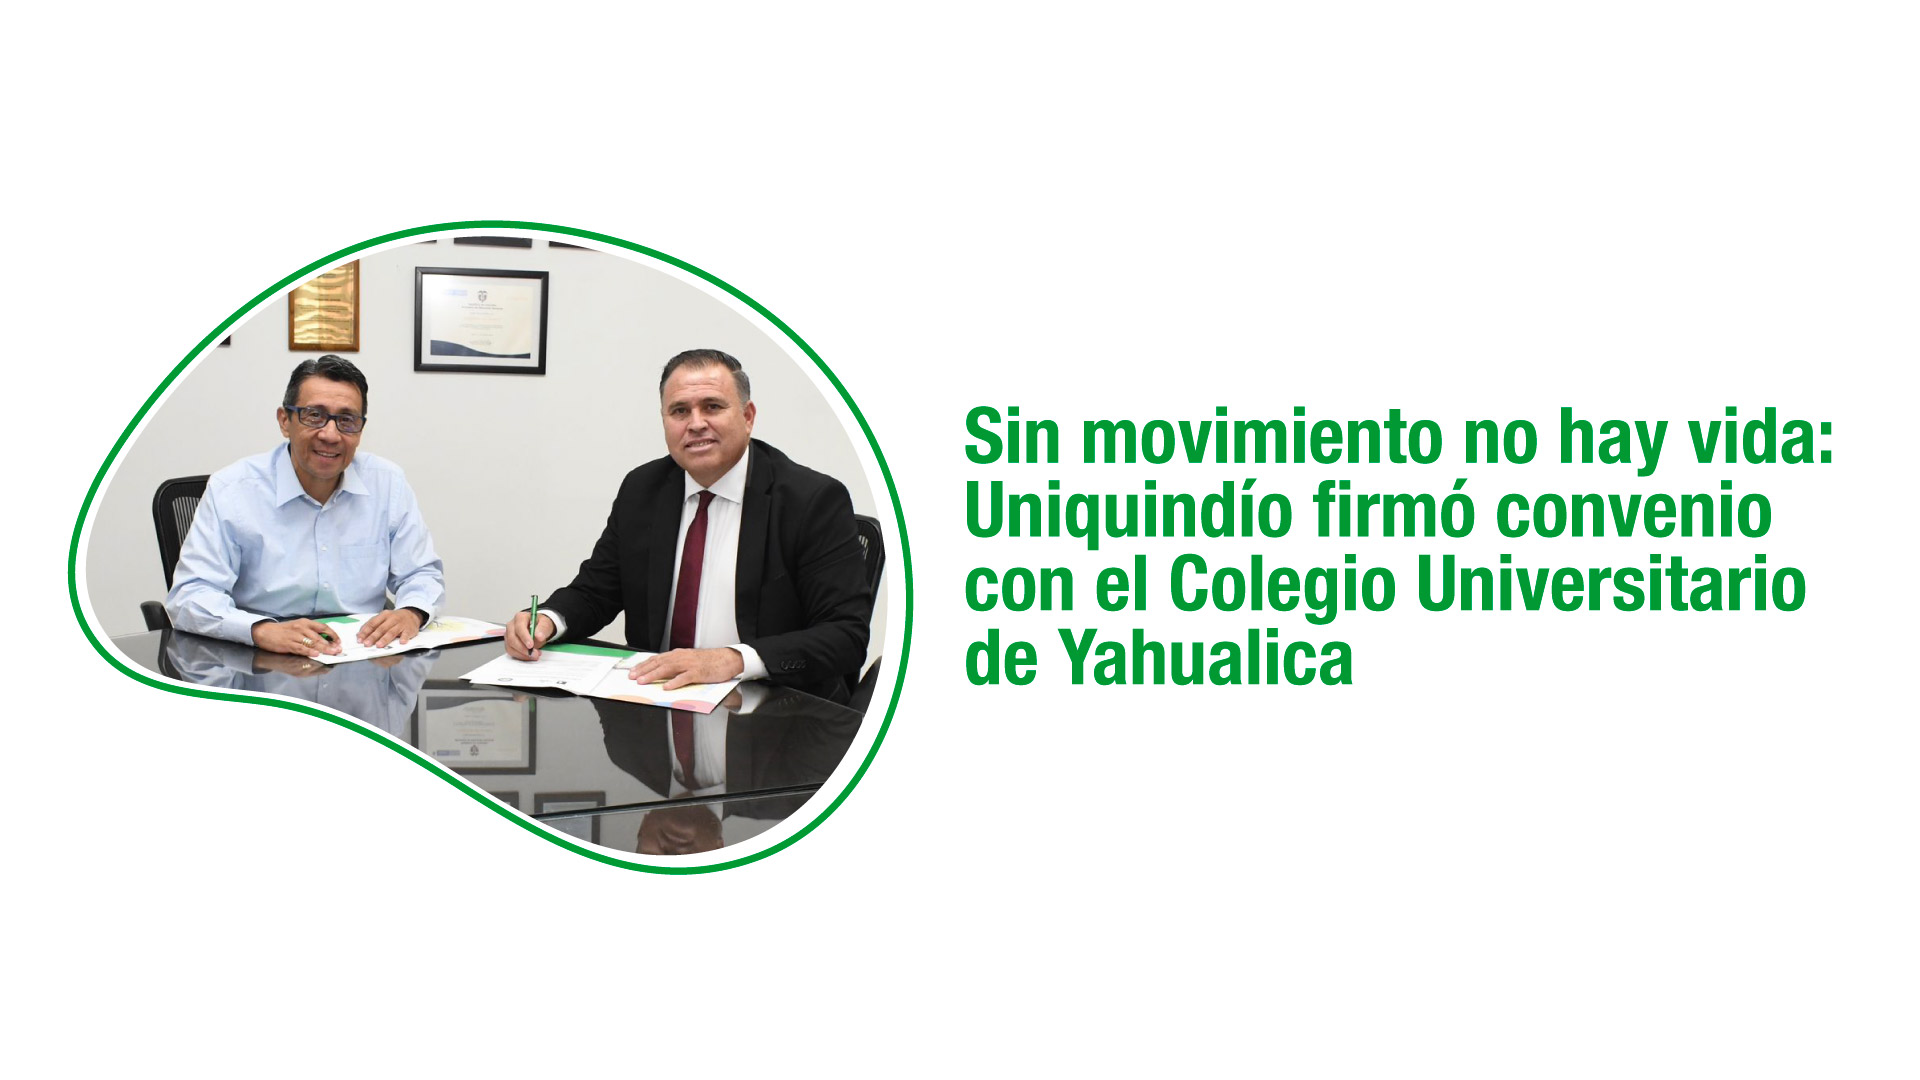 Sin movimiento no hay vida: Uniquindío firmó convenio con el Colegio Universitario de Yahualica